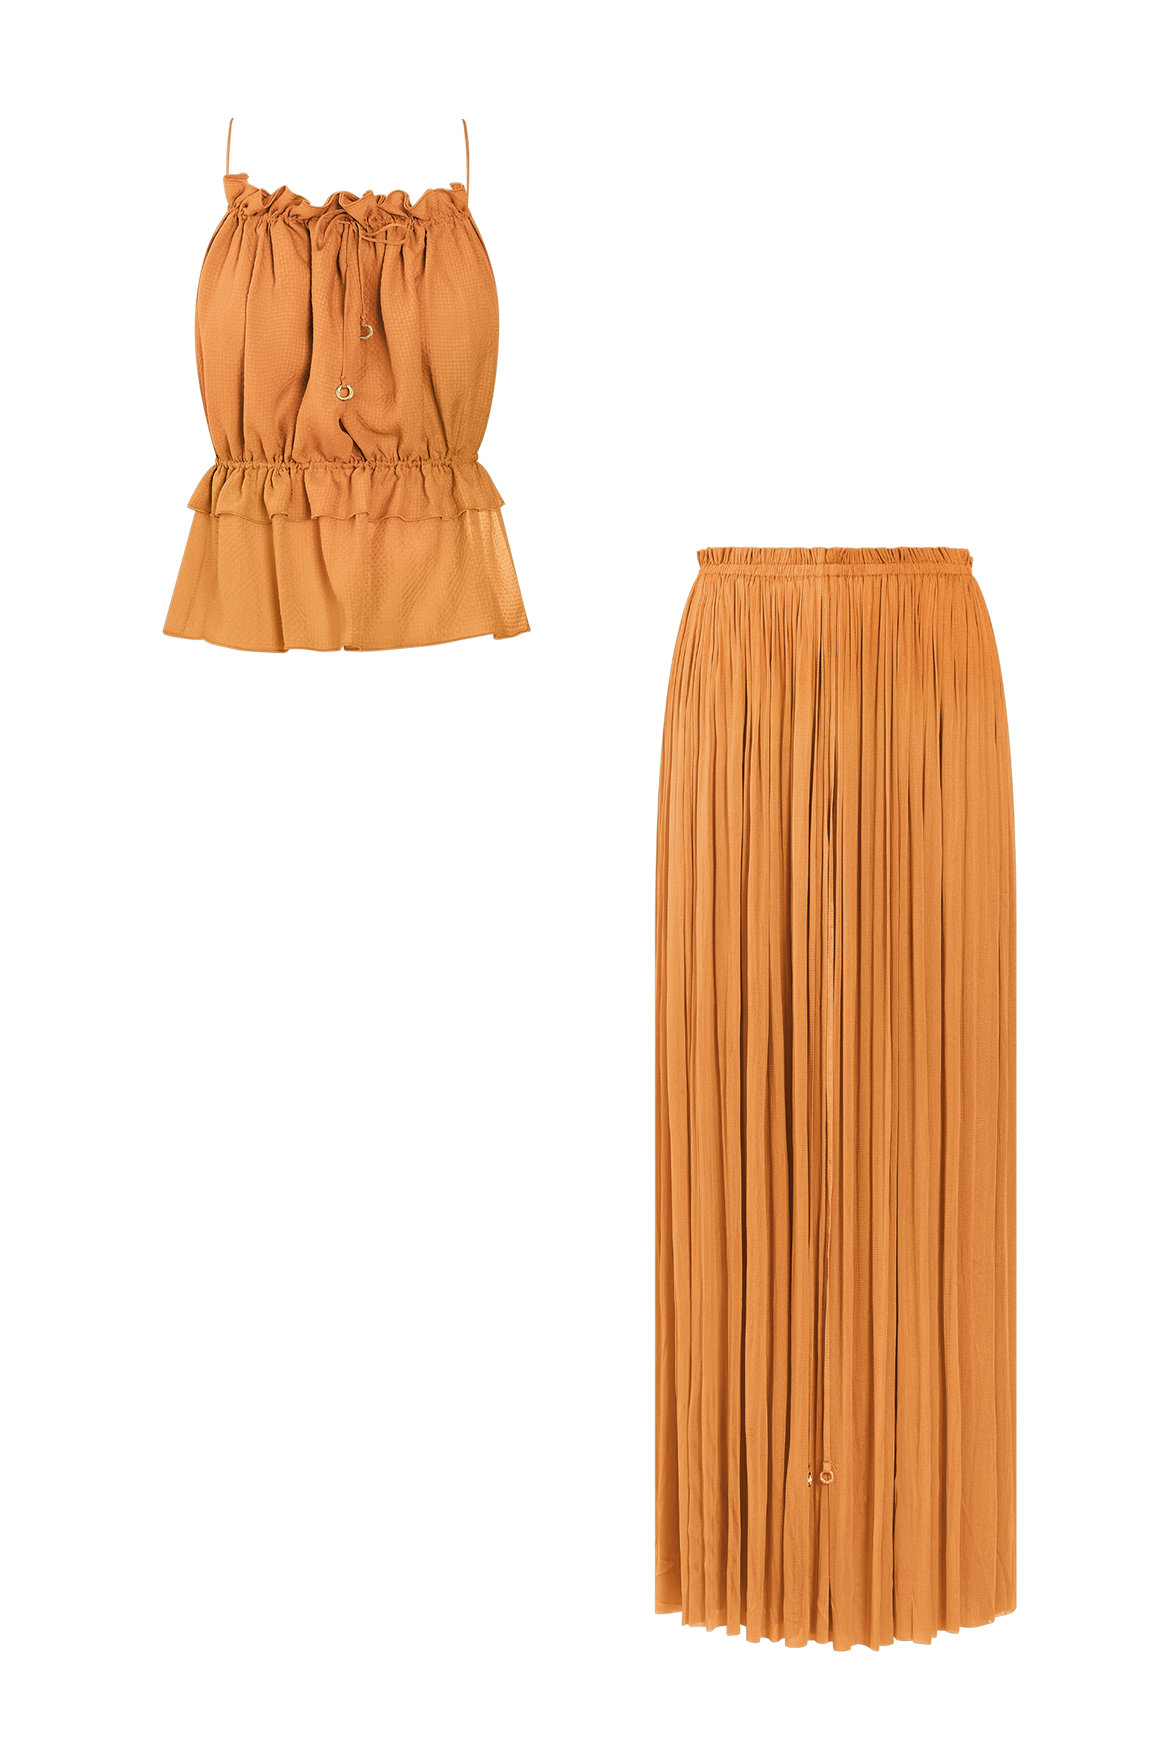 Rust Silk Skirt & String Top